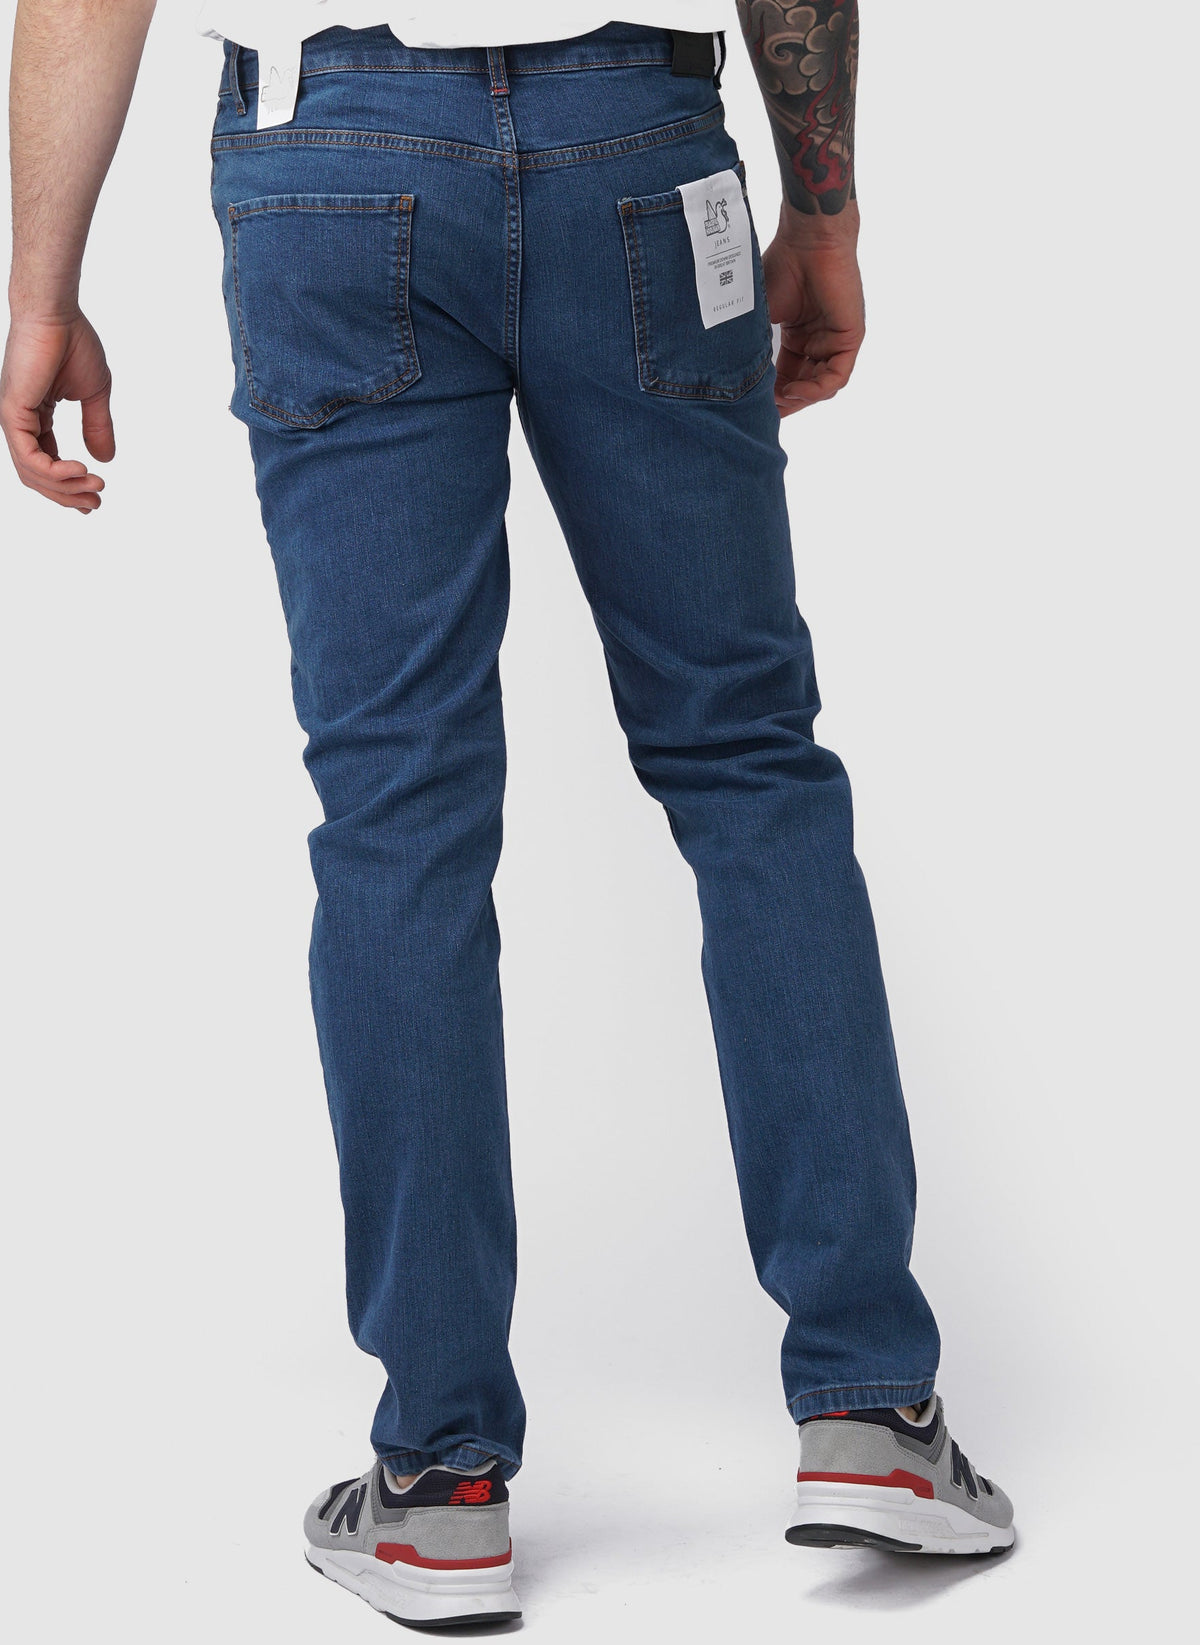 Regular Fit Jeans - Mid Wash-TSD - Hosen-4